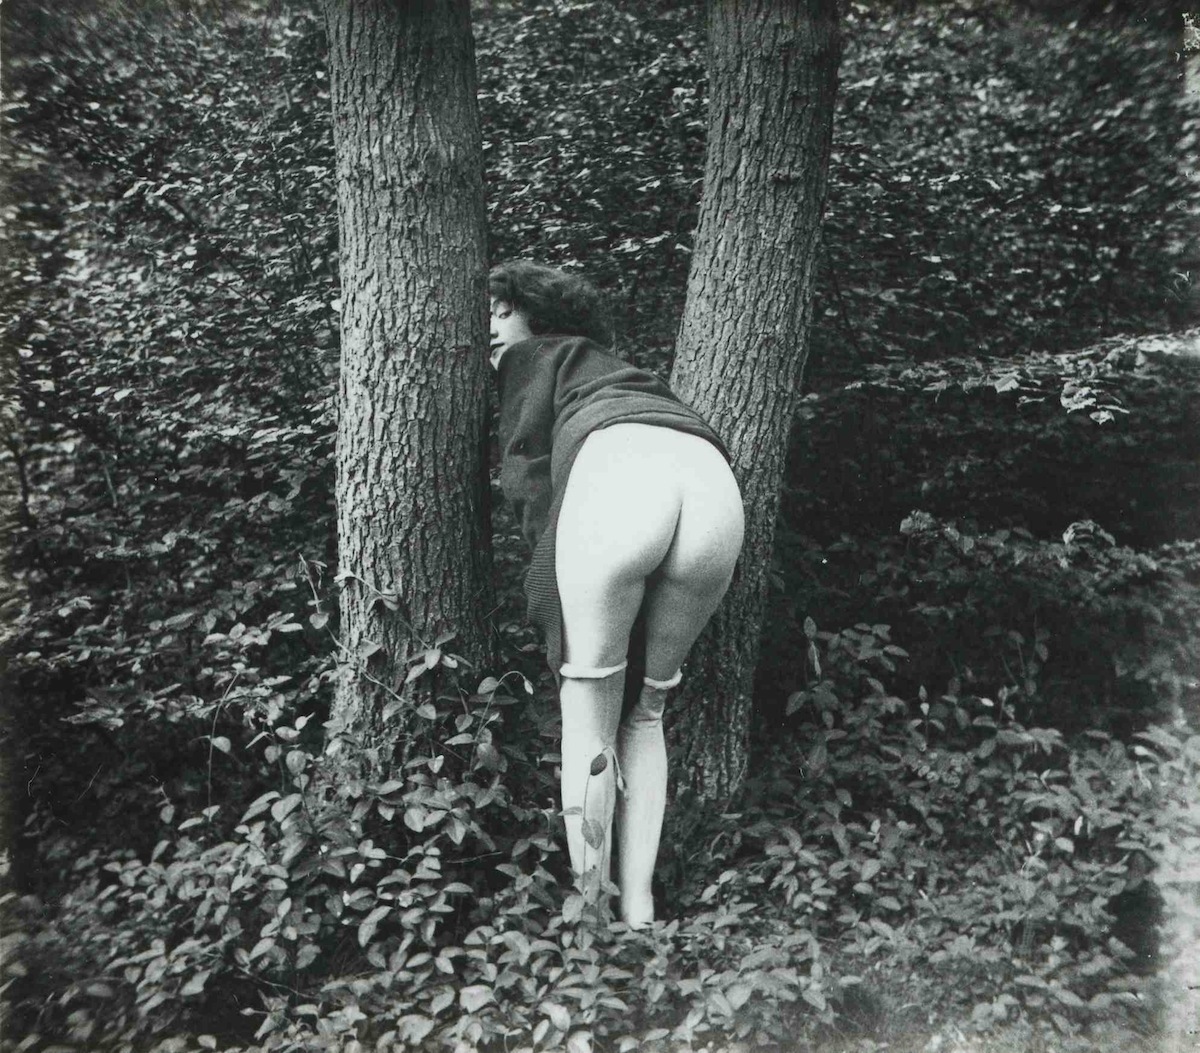 Billeder af franske sexarbejdere fra 1930erne